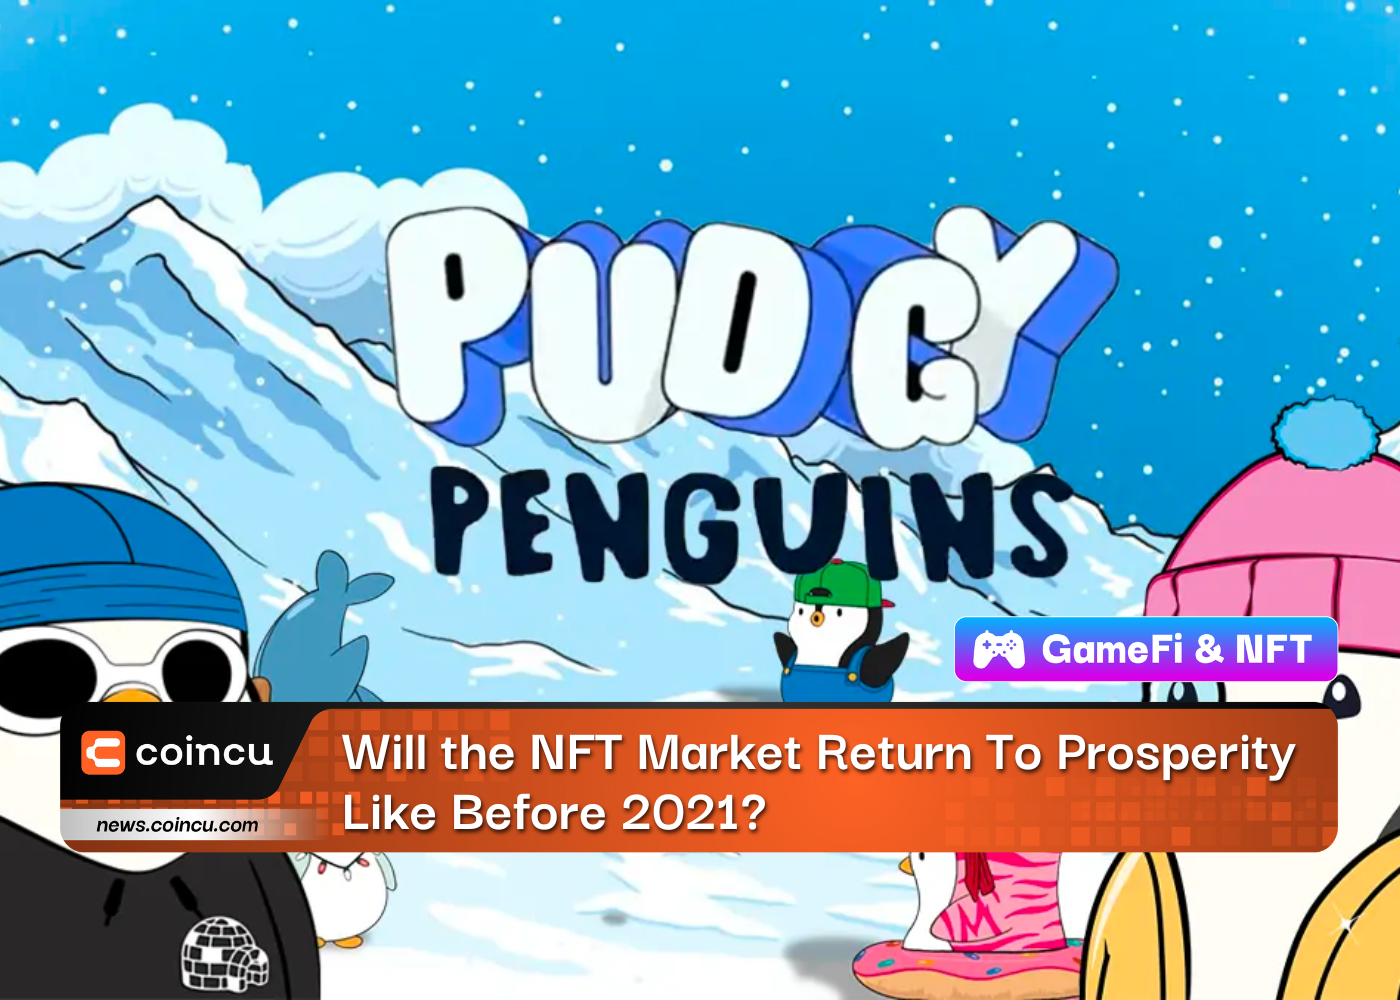 NFT Project Pudgy Penguins Secures $9 Million